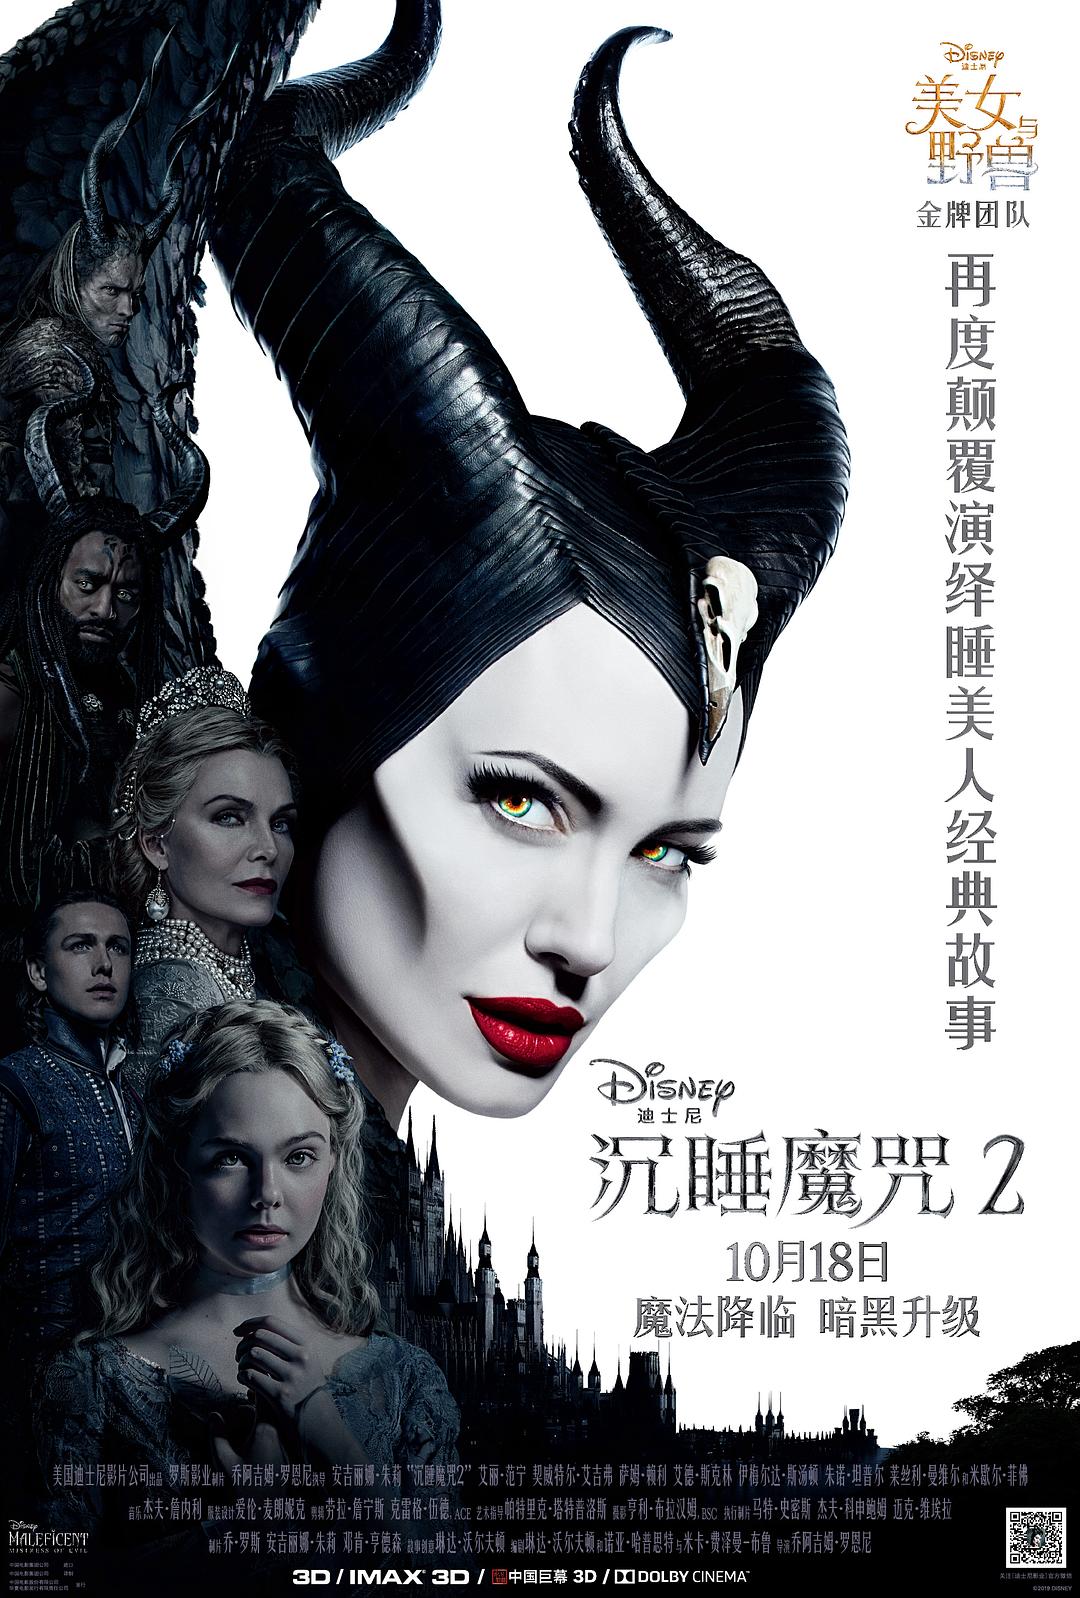 沉睡魔咒2 Maleficent.Mistress.of.Evil.2019.1080p.BluRay.x264.DTS-HD.MA.7.1-FGT 11.86GB-1.png